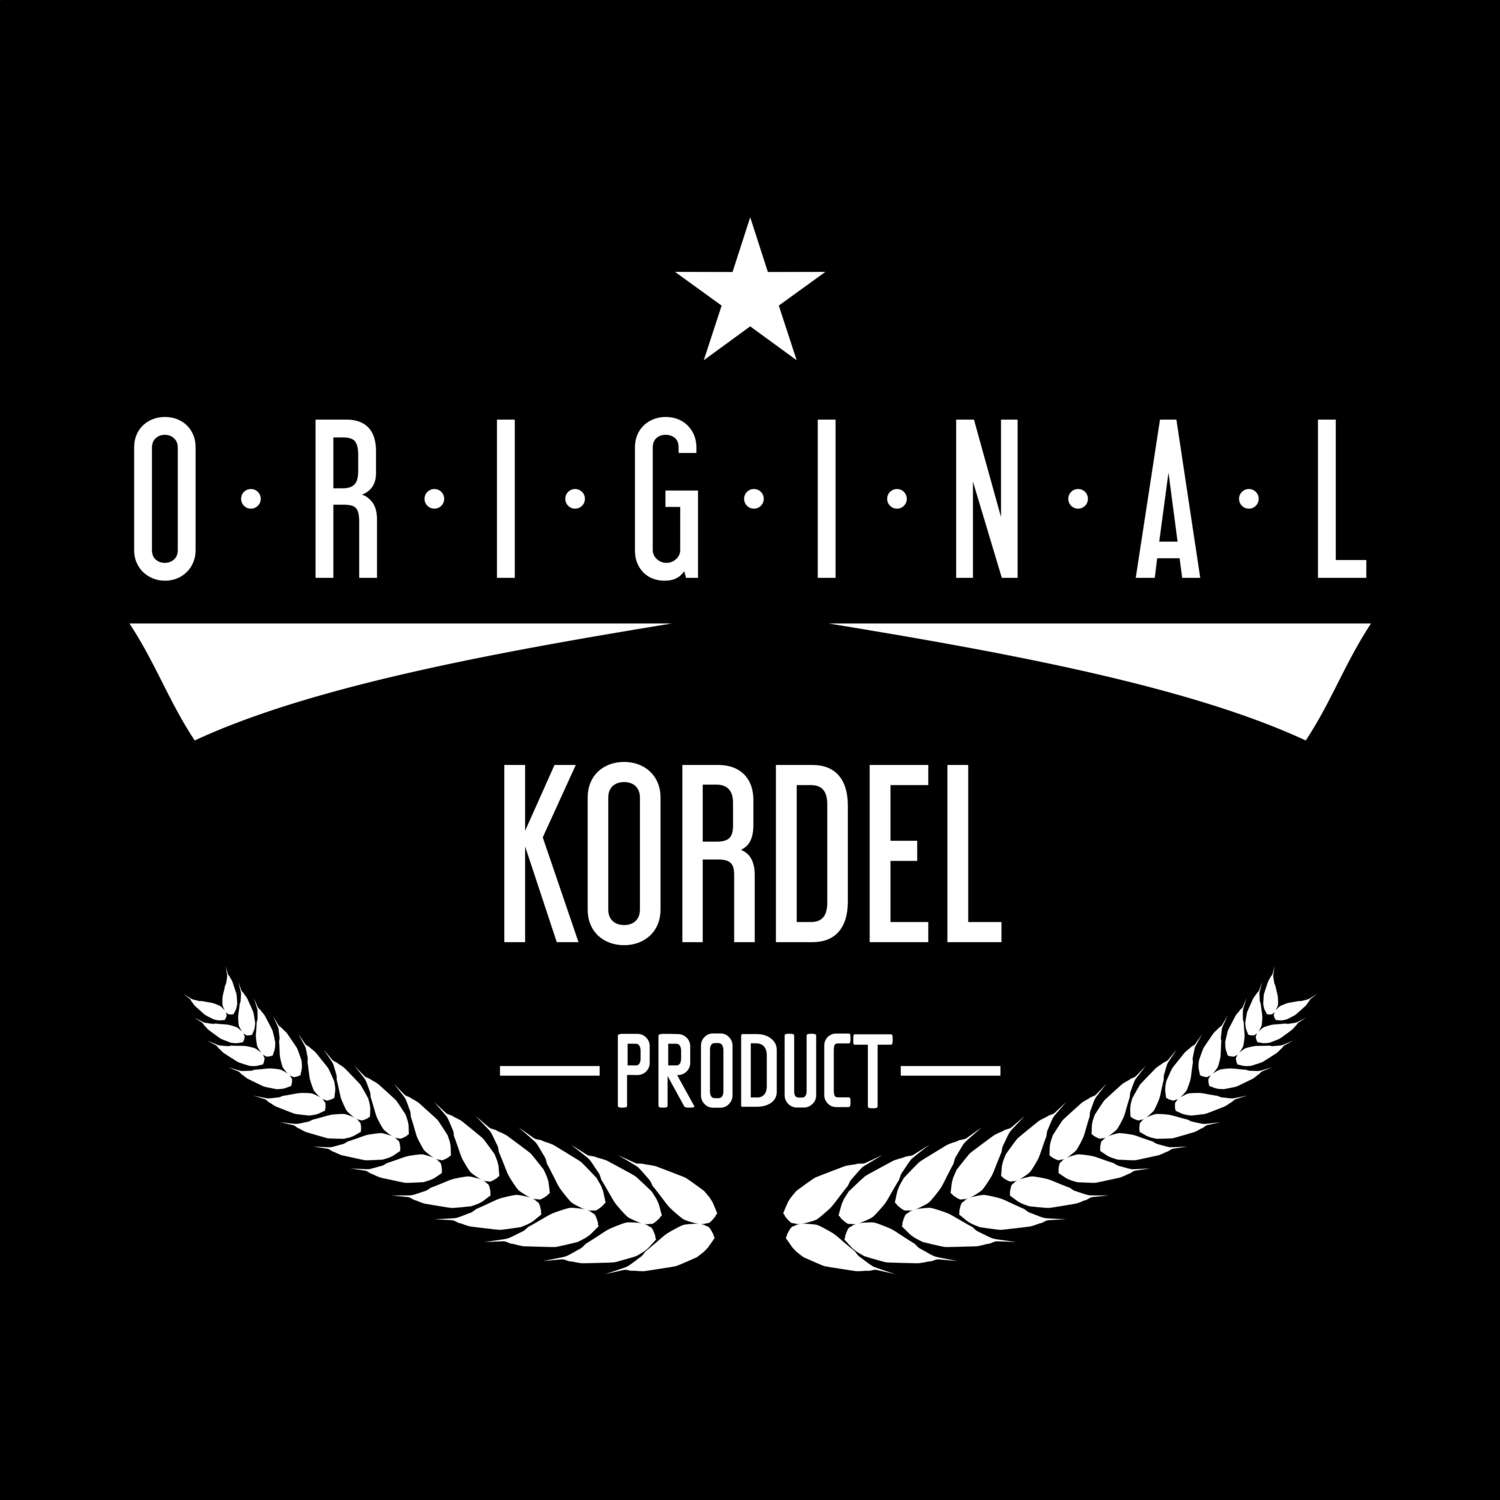 Kordel T-Shirt »Original Product«